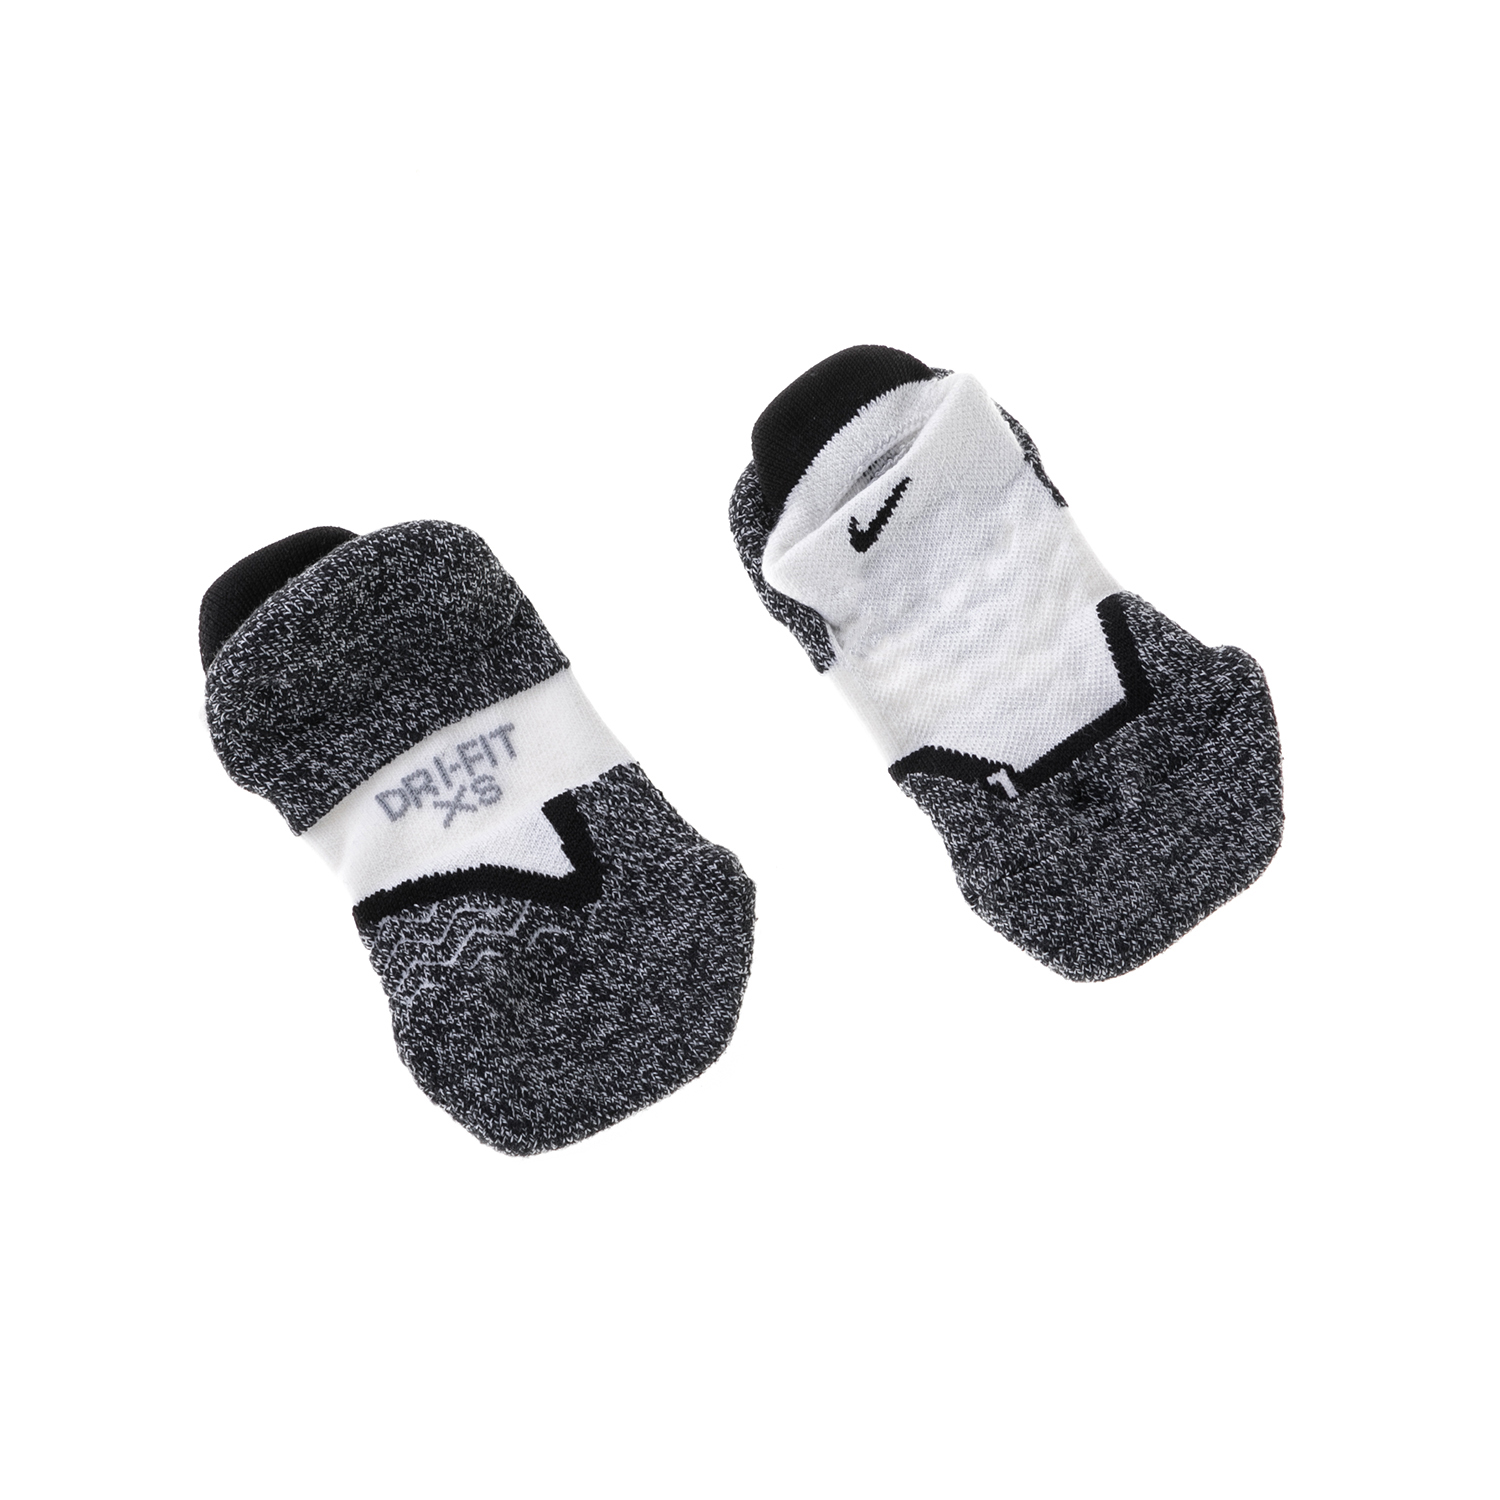 Γυναικεία/Αξεσουάρ/Κάλτσες NIKE - Unisex κάλτσες NIKE λευκές γκρι